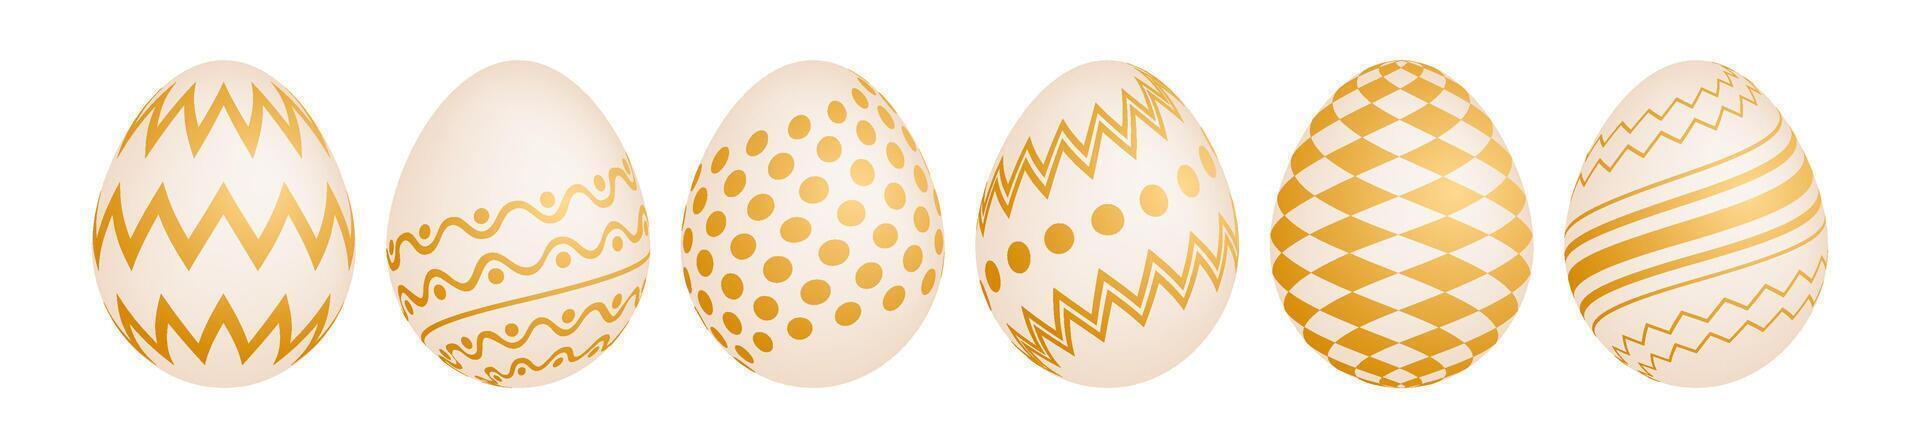 conjunto de seis oro Pascua de Resurrección huevos vector